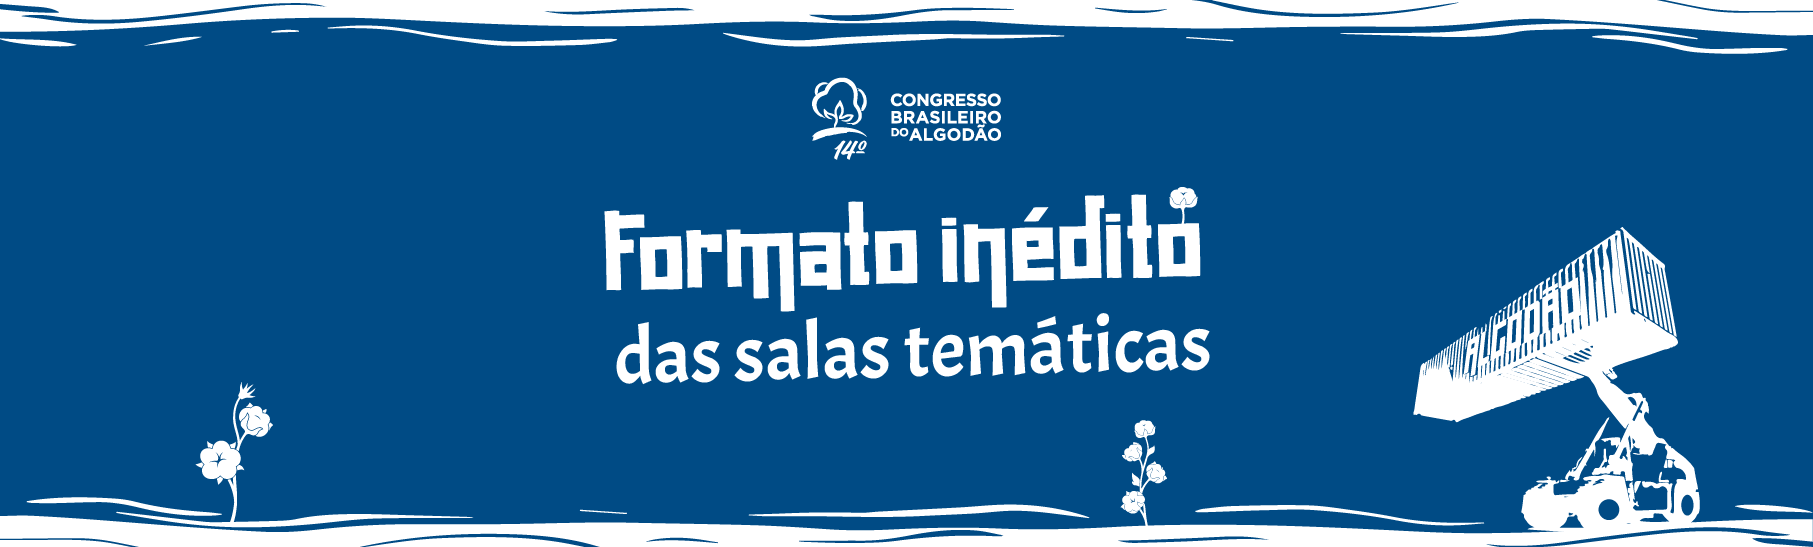 14º Congresso Brasileiro do Algodão terá palestras silenciosas nas salas temáticas.